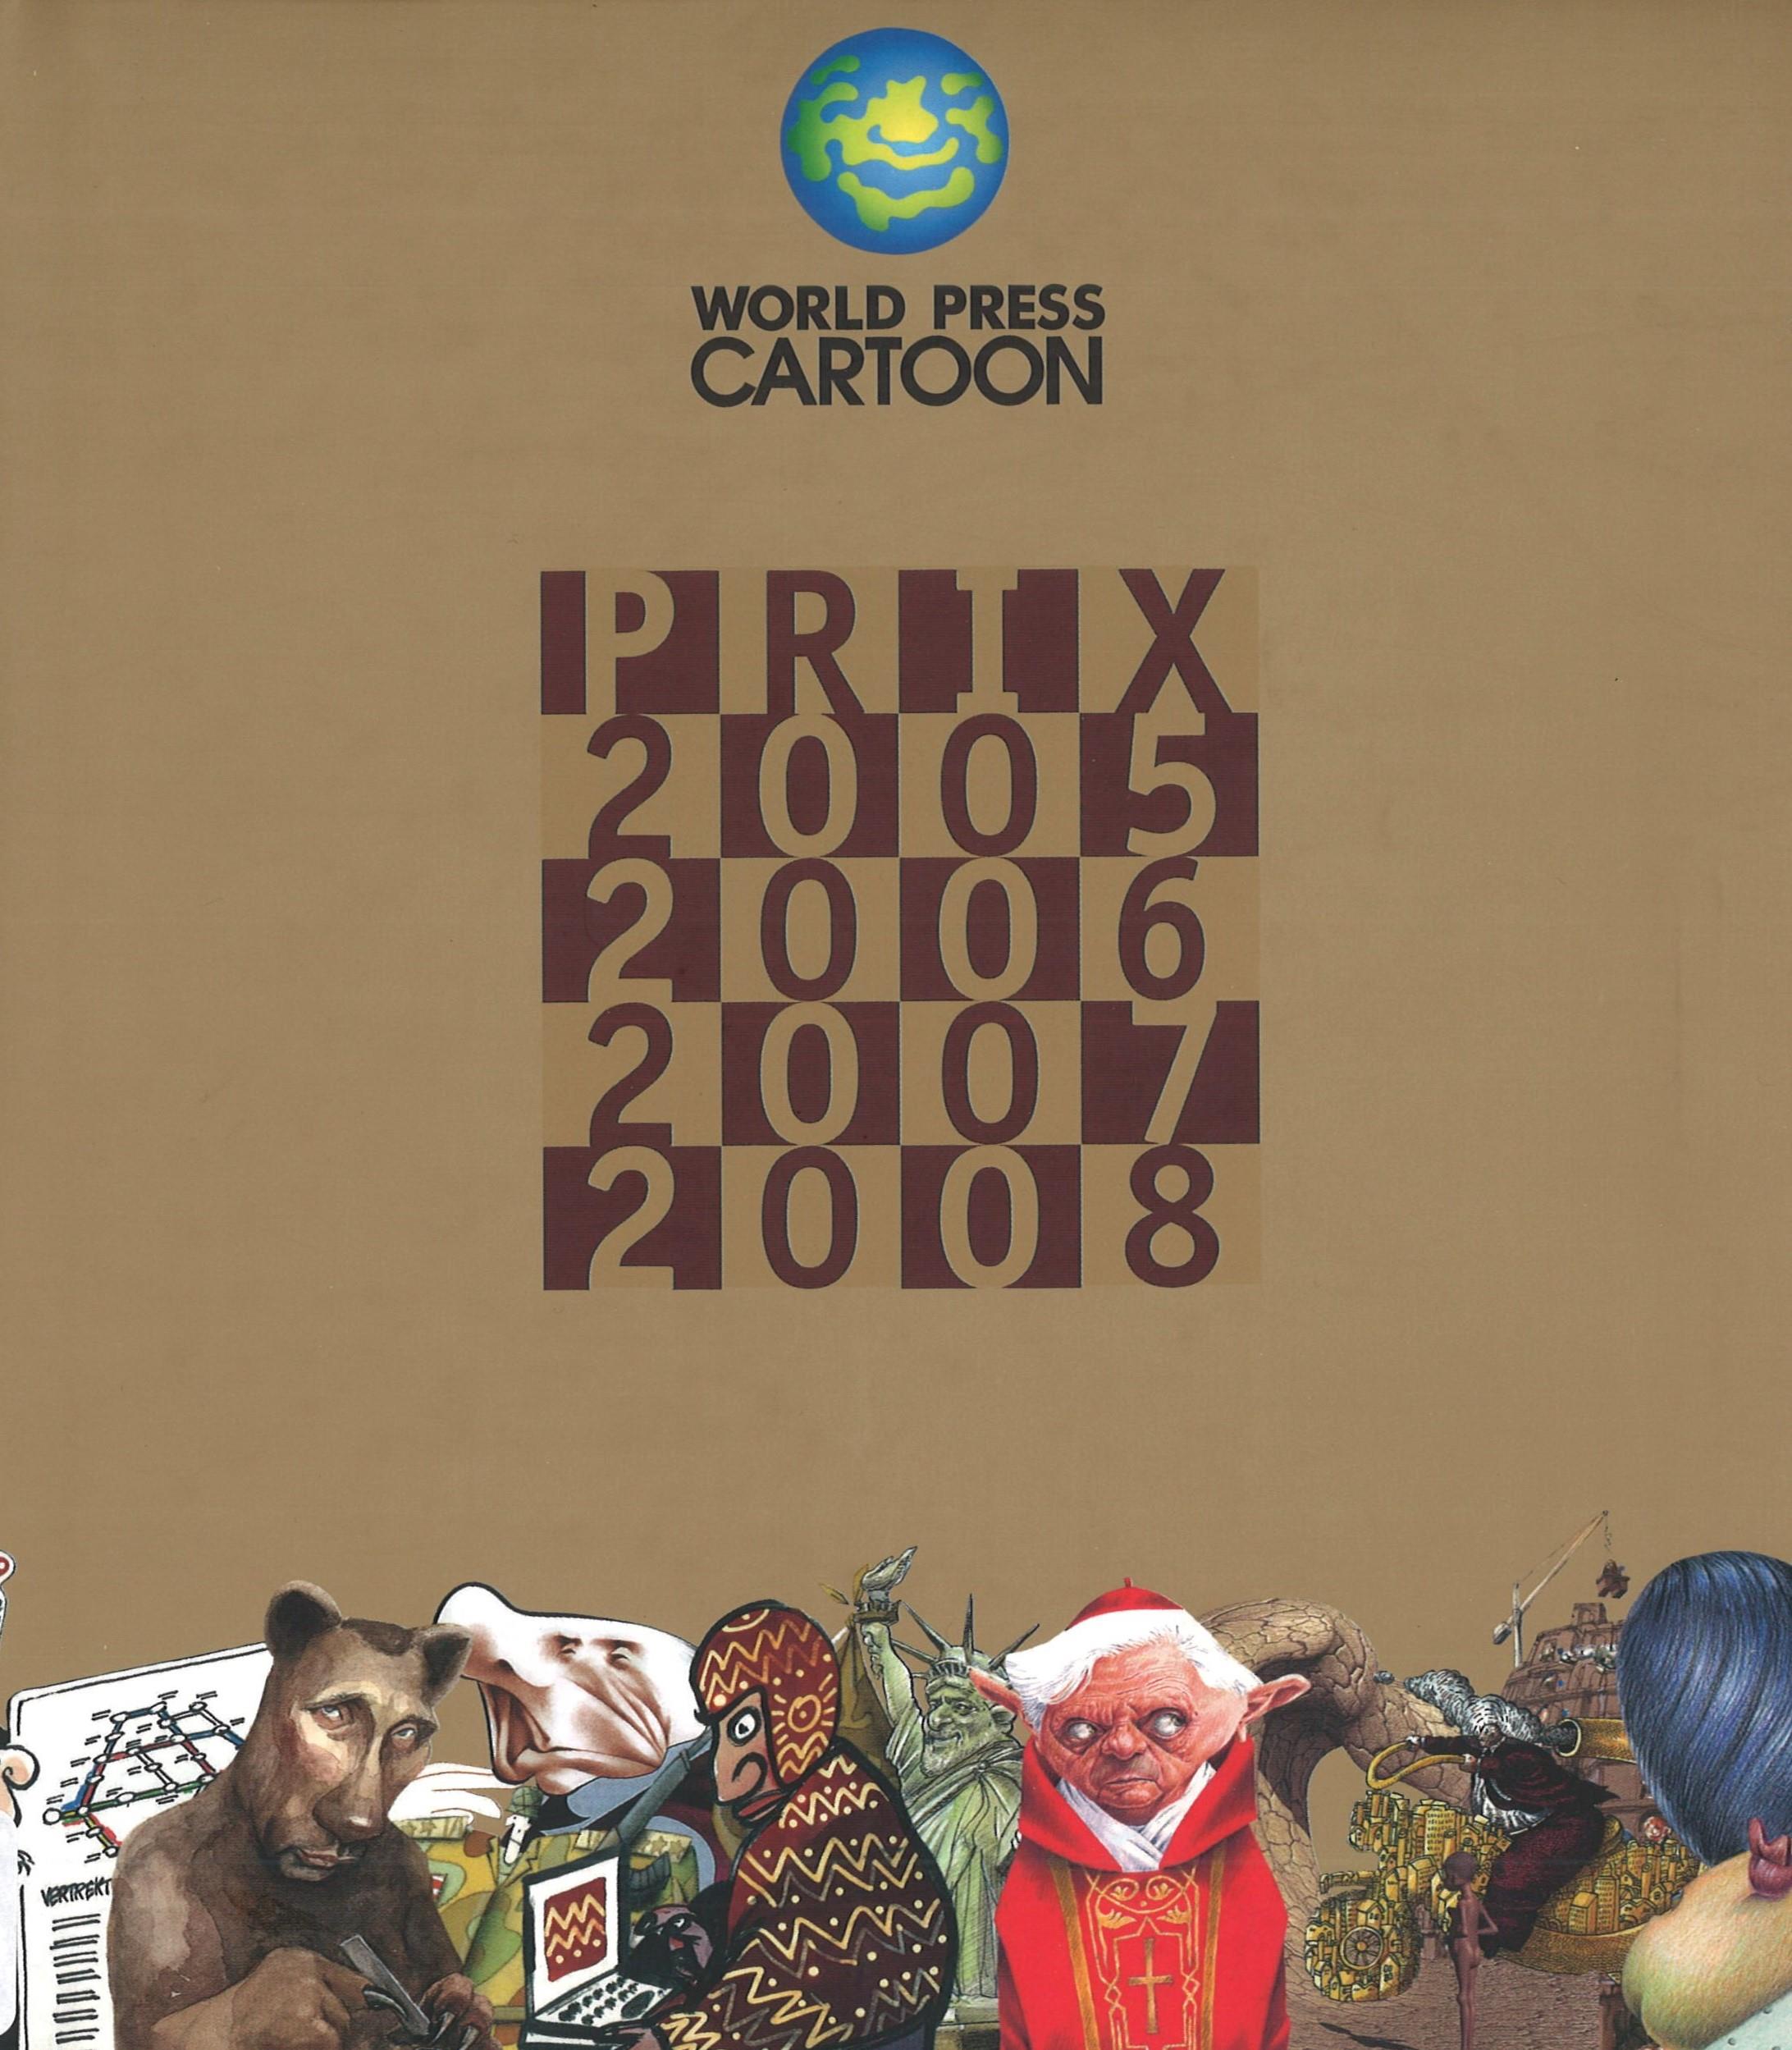 World Press Cartoon Prix. 2005. 2006. 2007. 2008